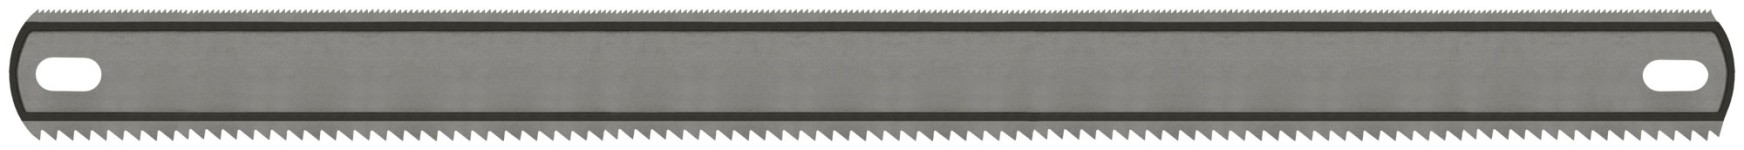 Полотно ножовочное металл/дерево ( 24 TPI / 8 TPI ), каленый зуб, широкое двустороннее, 300х24 мм, 1 шт./ ПВХ конверт